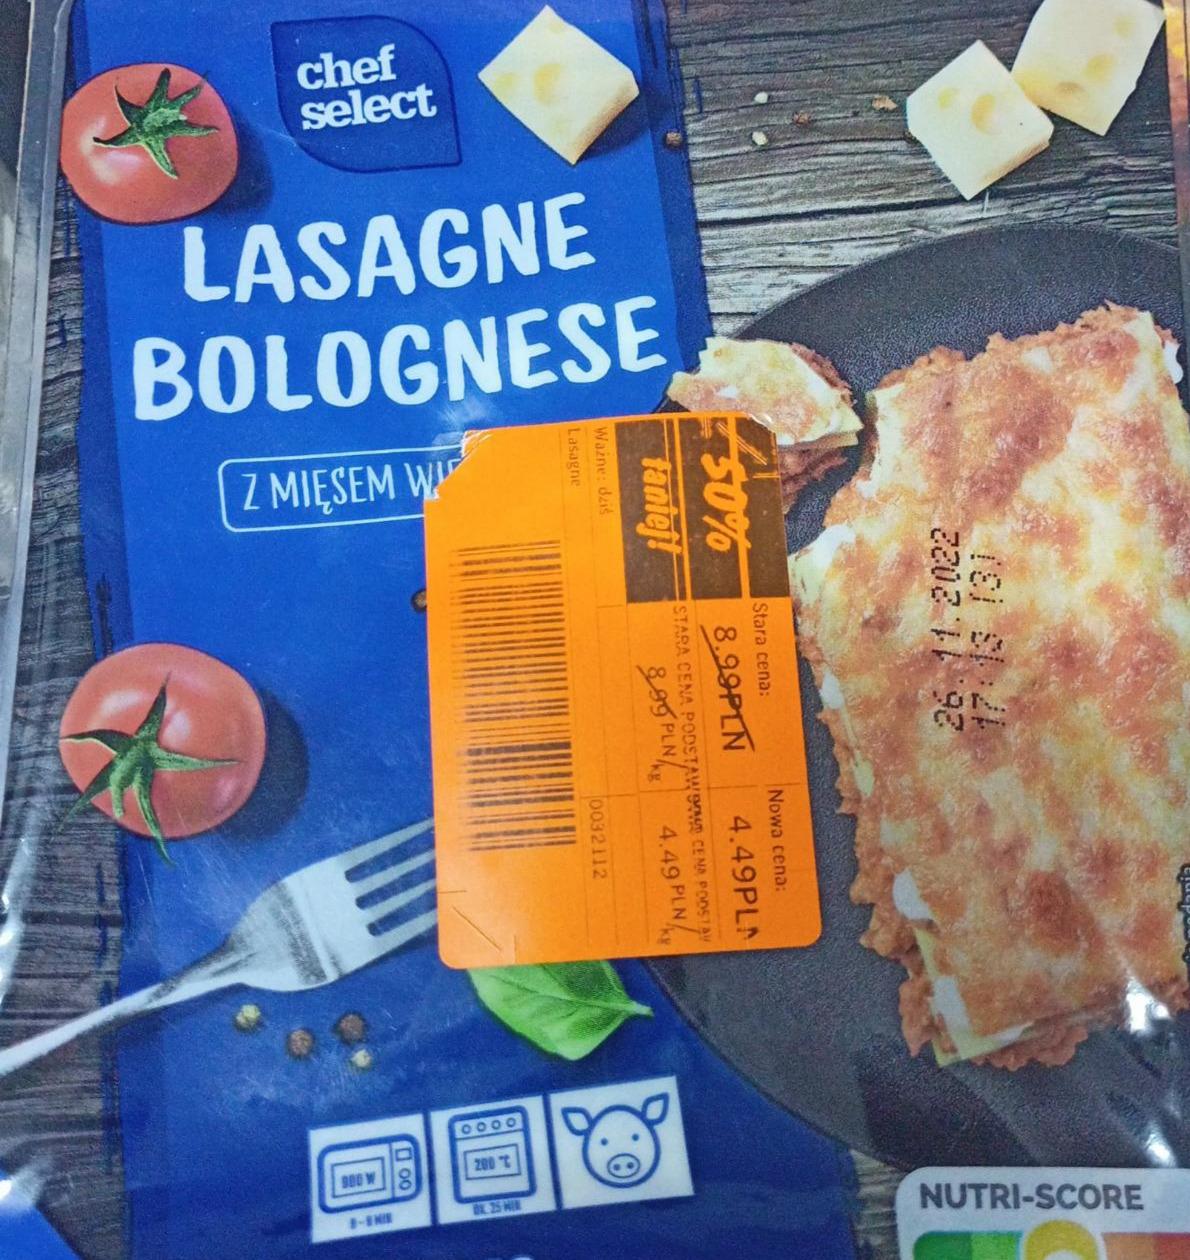 Lasagne bolognese z Select wieprzowym Chef mięsem wartości kalorie, i kJ odżywcze 